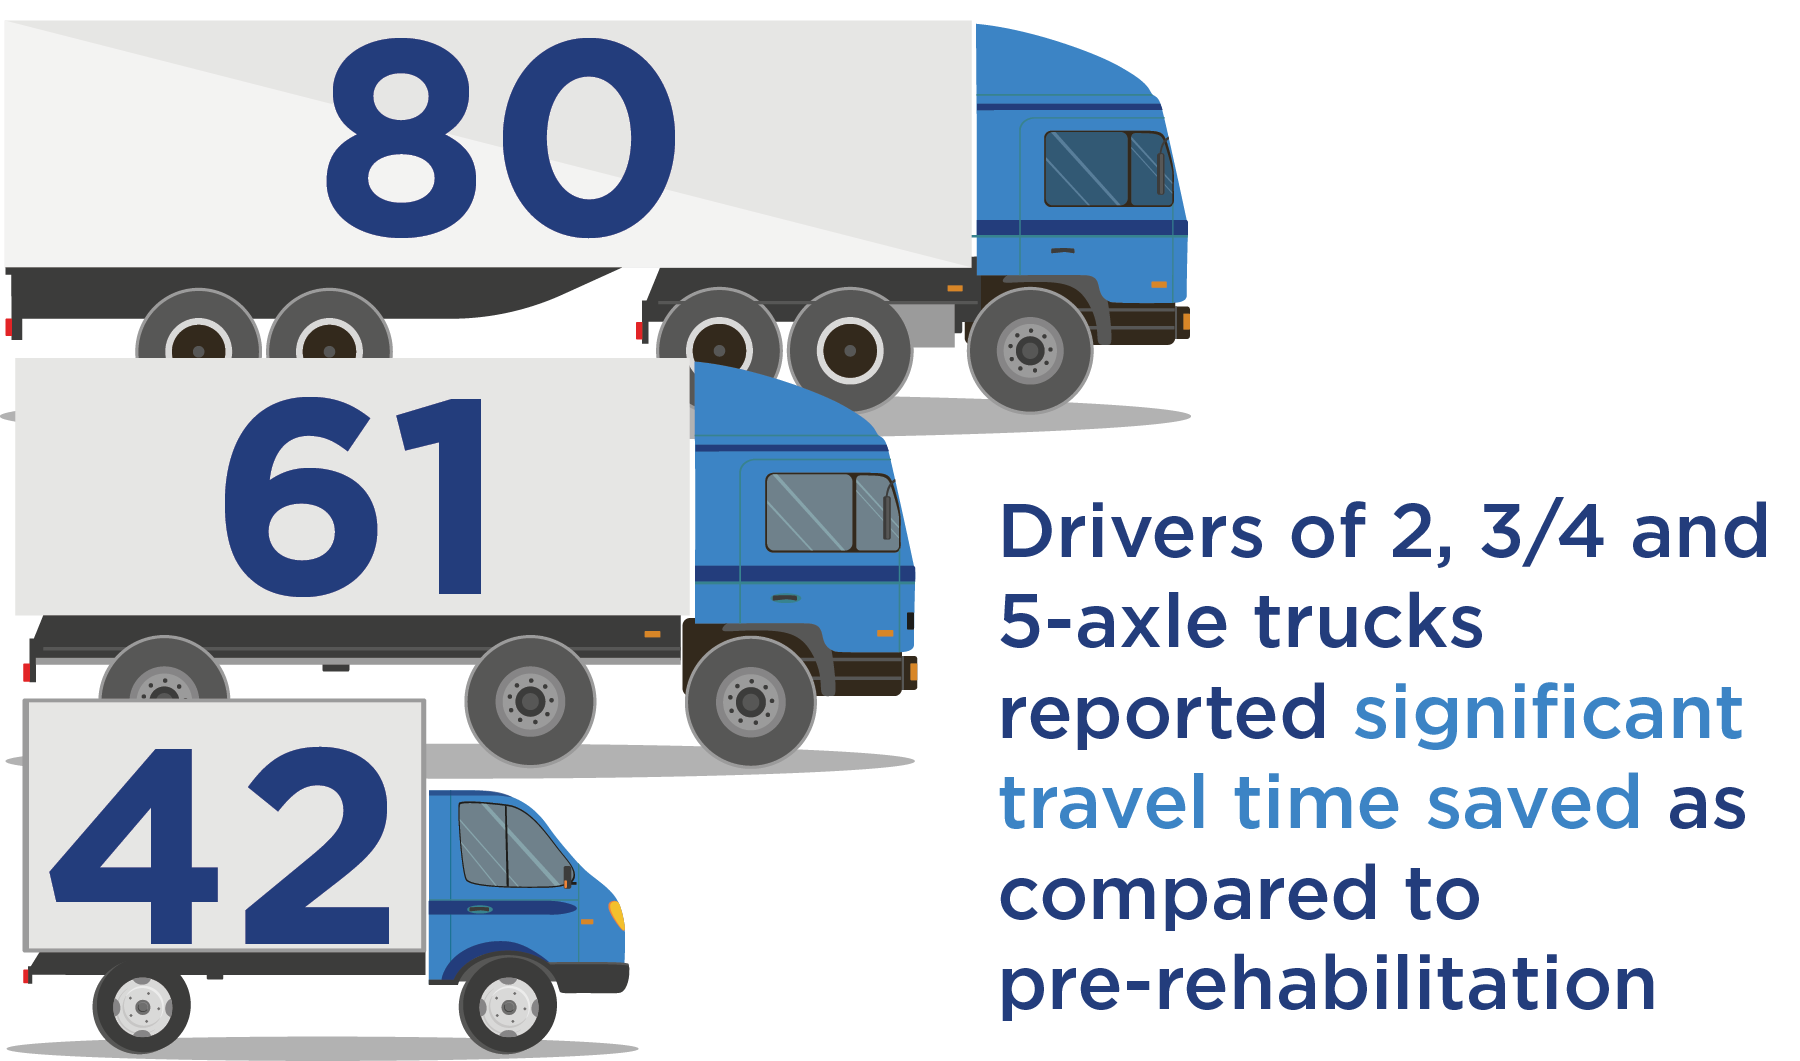 Los camioneros de doble eje ahorraron 42 minutos;  Los camiones de tres y cuatro ejes ahorraron 61 minutos;  En comparación con el período anterior a la rehabilitación, los camiones de cinco ejes ahorraron 80 minutos.